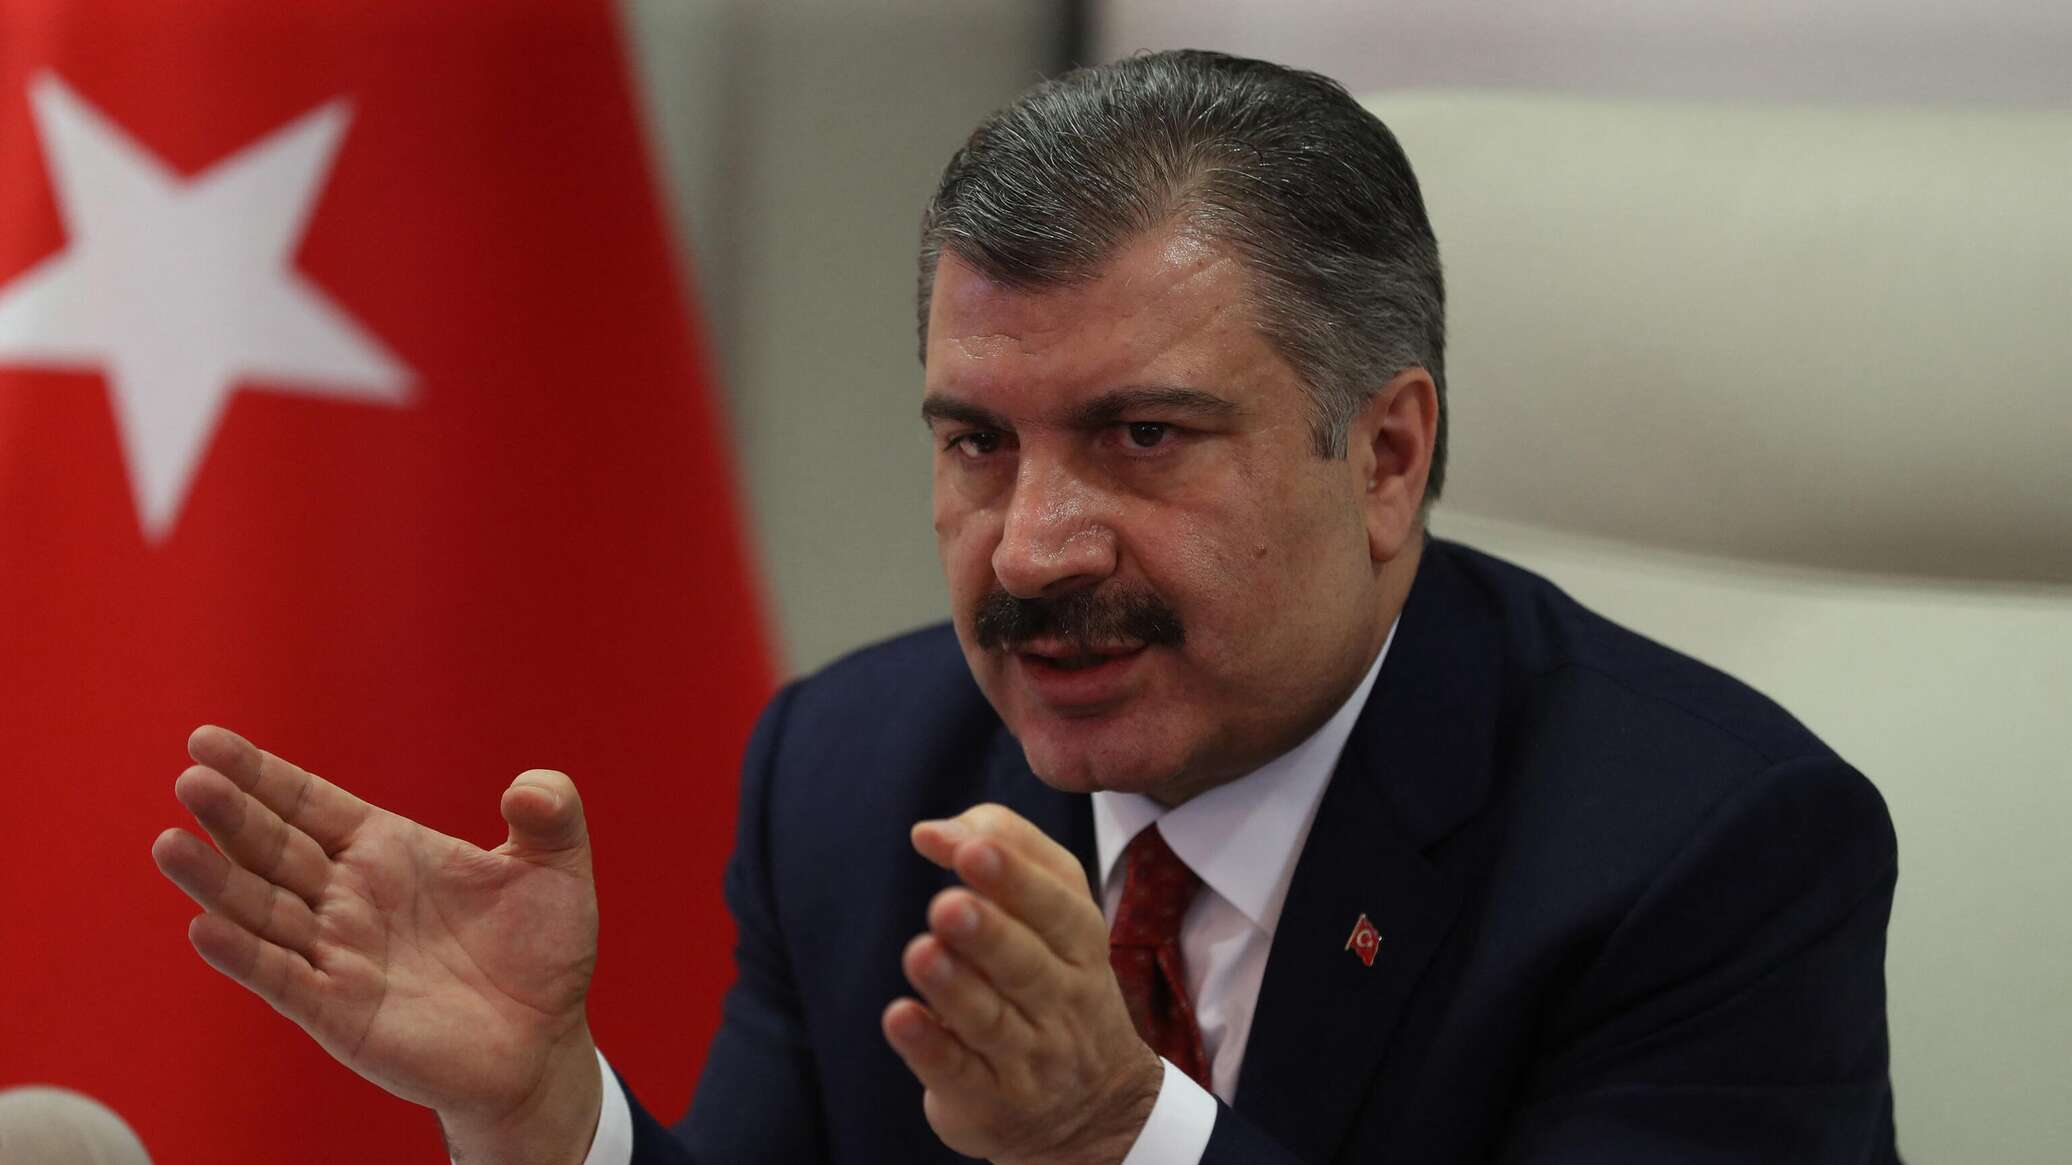 وزير الصحة التركي: مصر تسمح لسفن تركية بدخول موانئها لعلاج الجرحى في غزة - عاجل